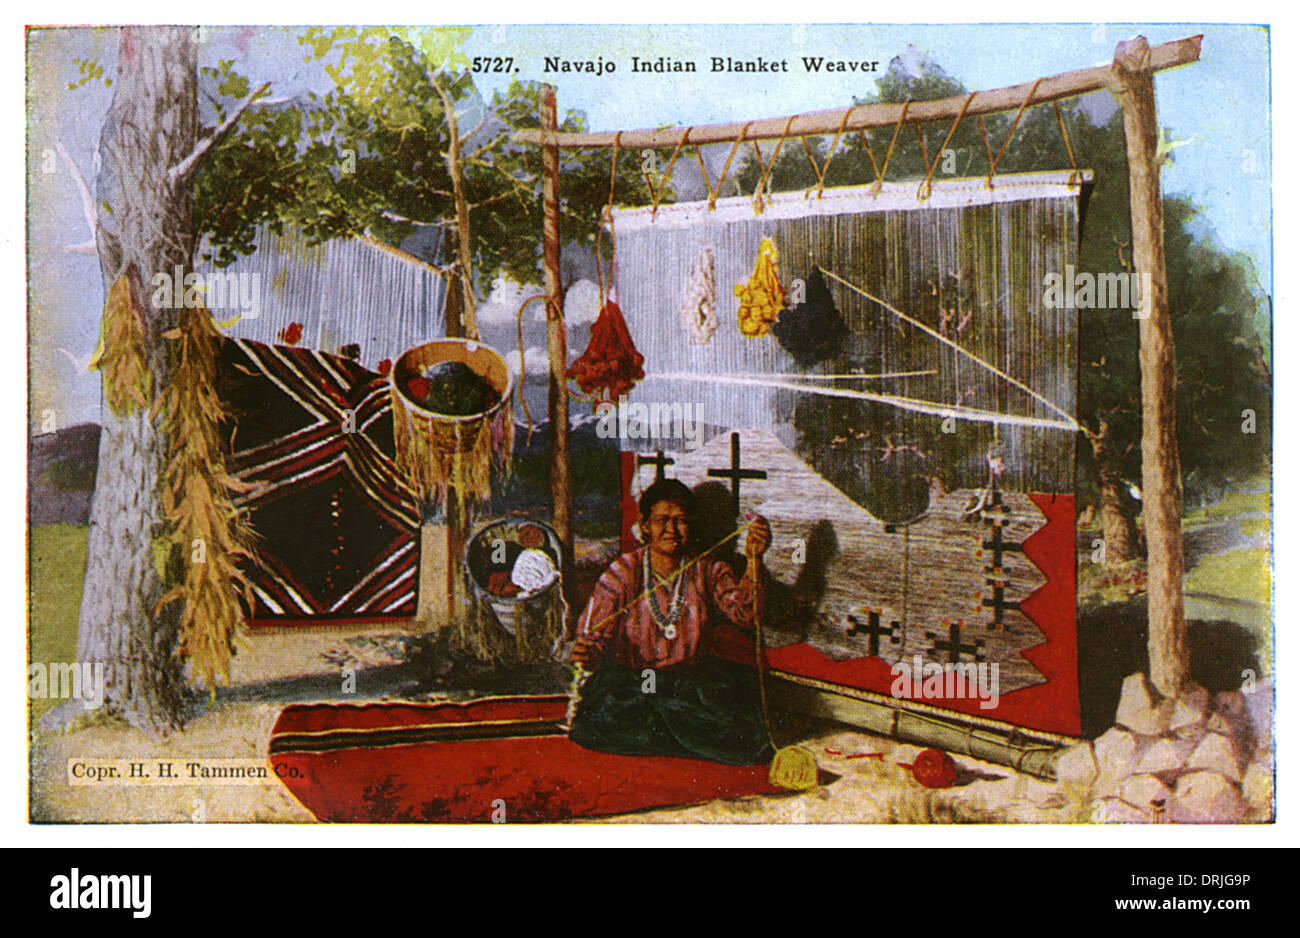 Native American Navajo Indian blanket weaver Stock Photo